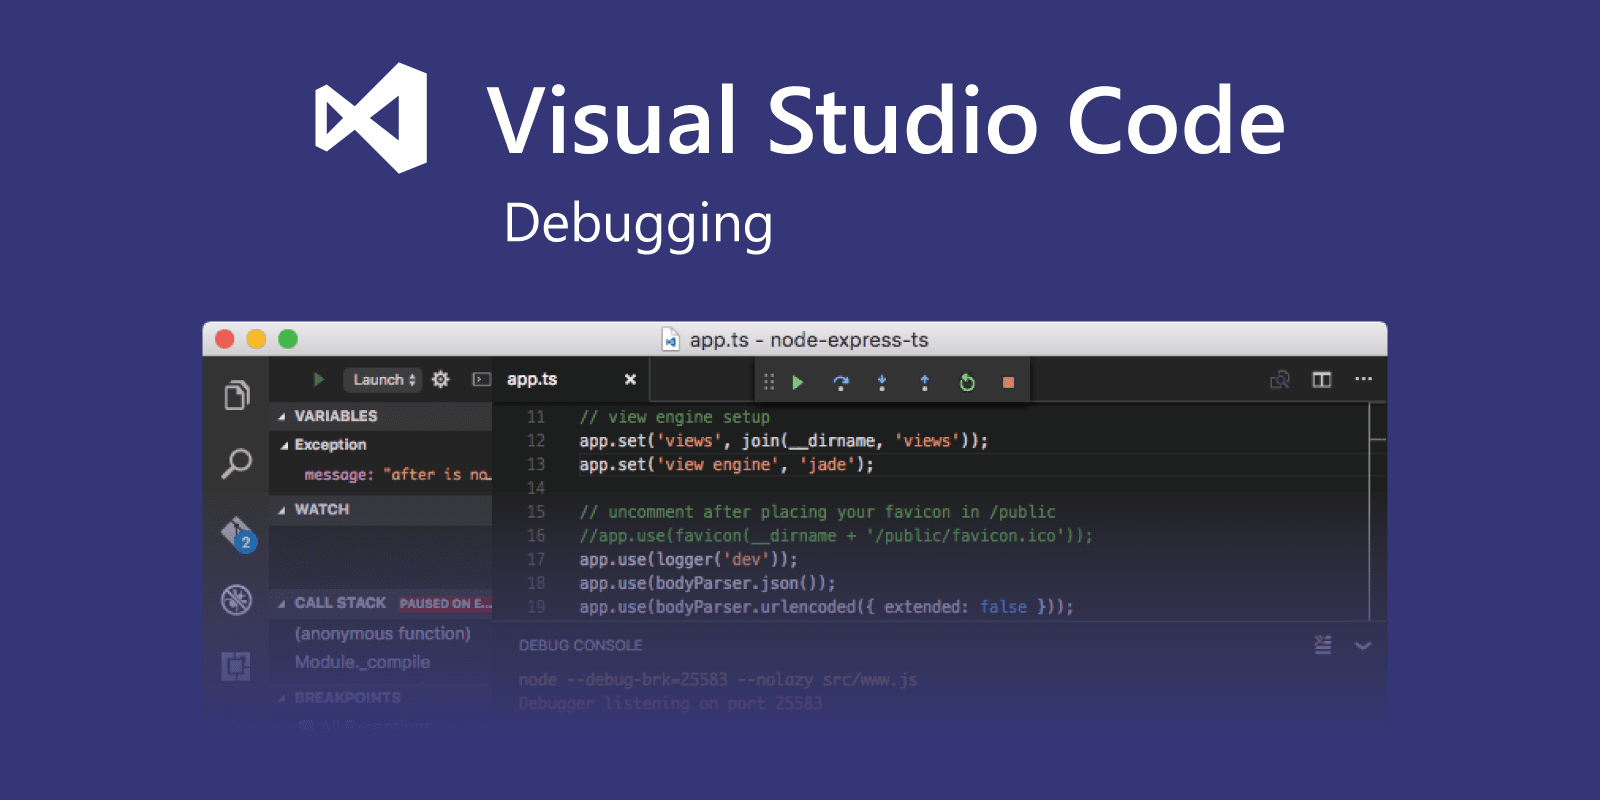 javascript debugging